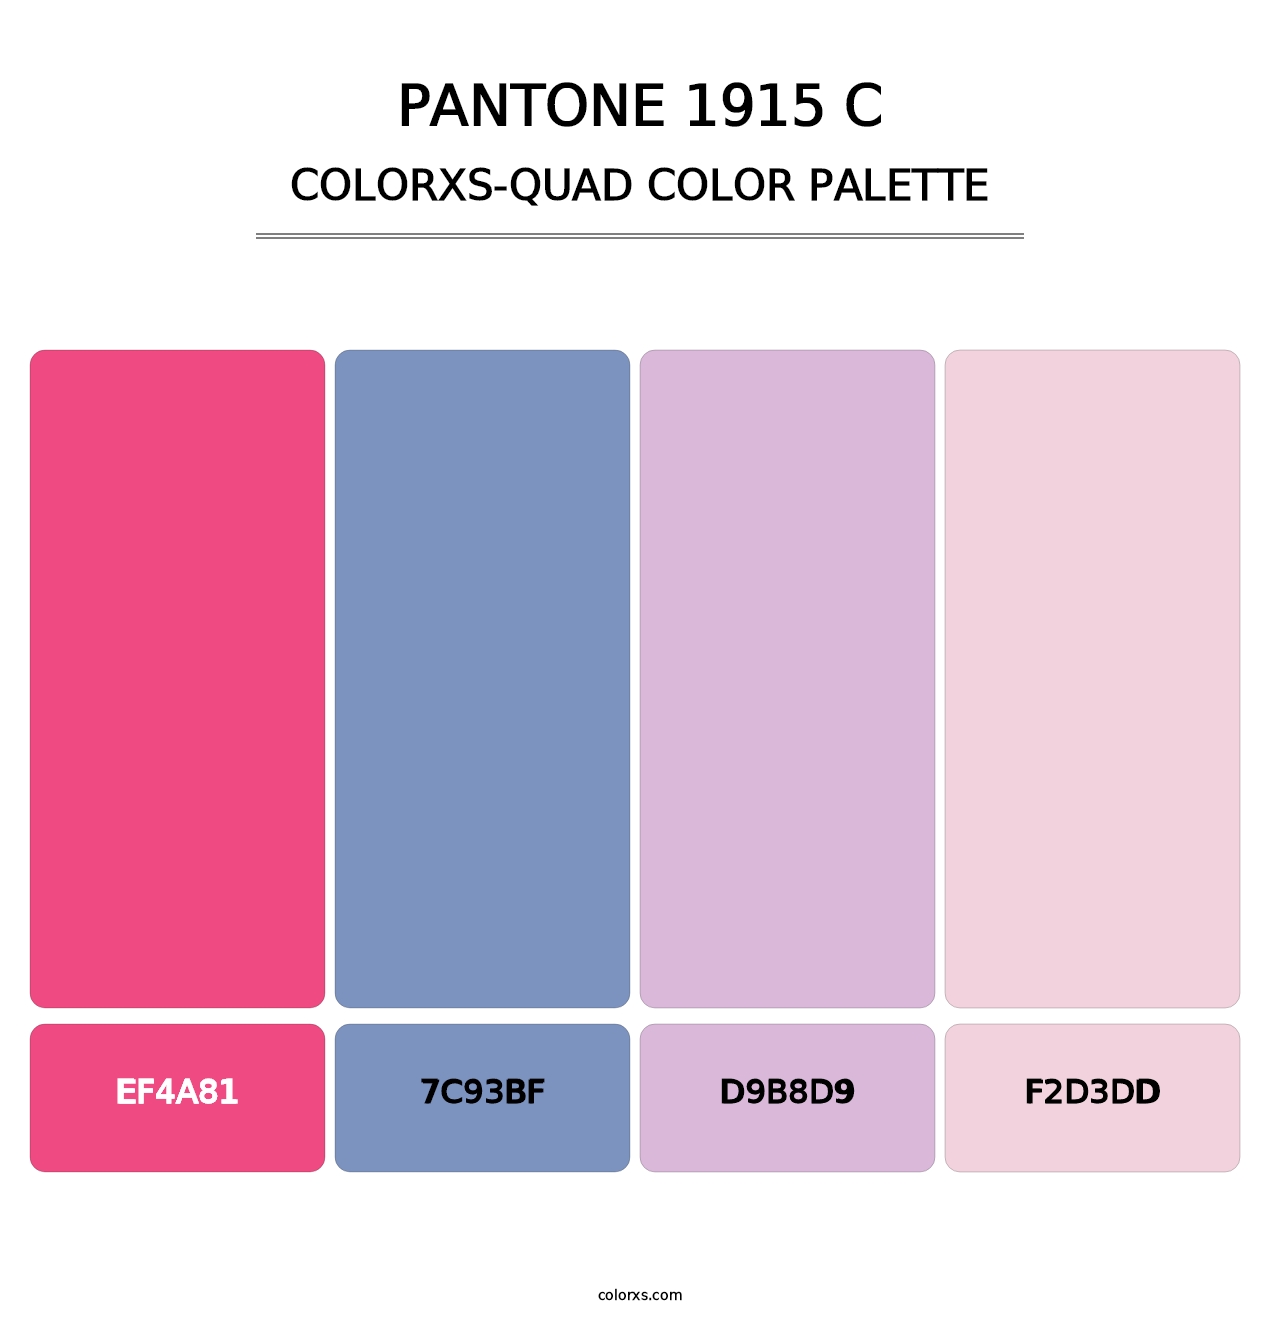 PANTONE 1915 C - Colorxs Quad Palette